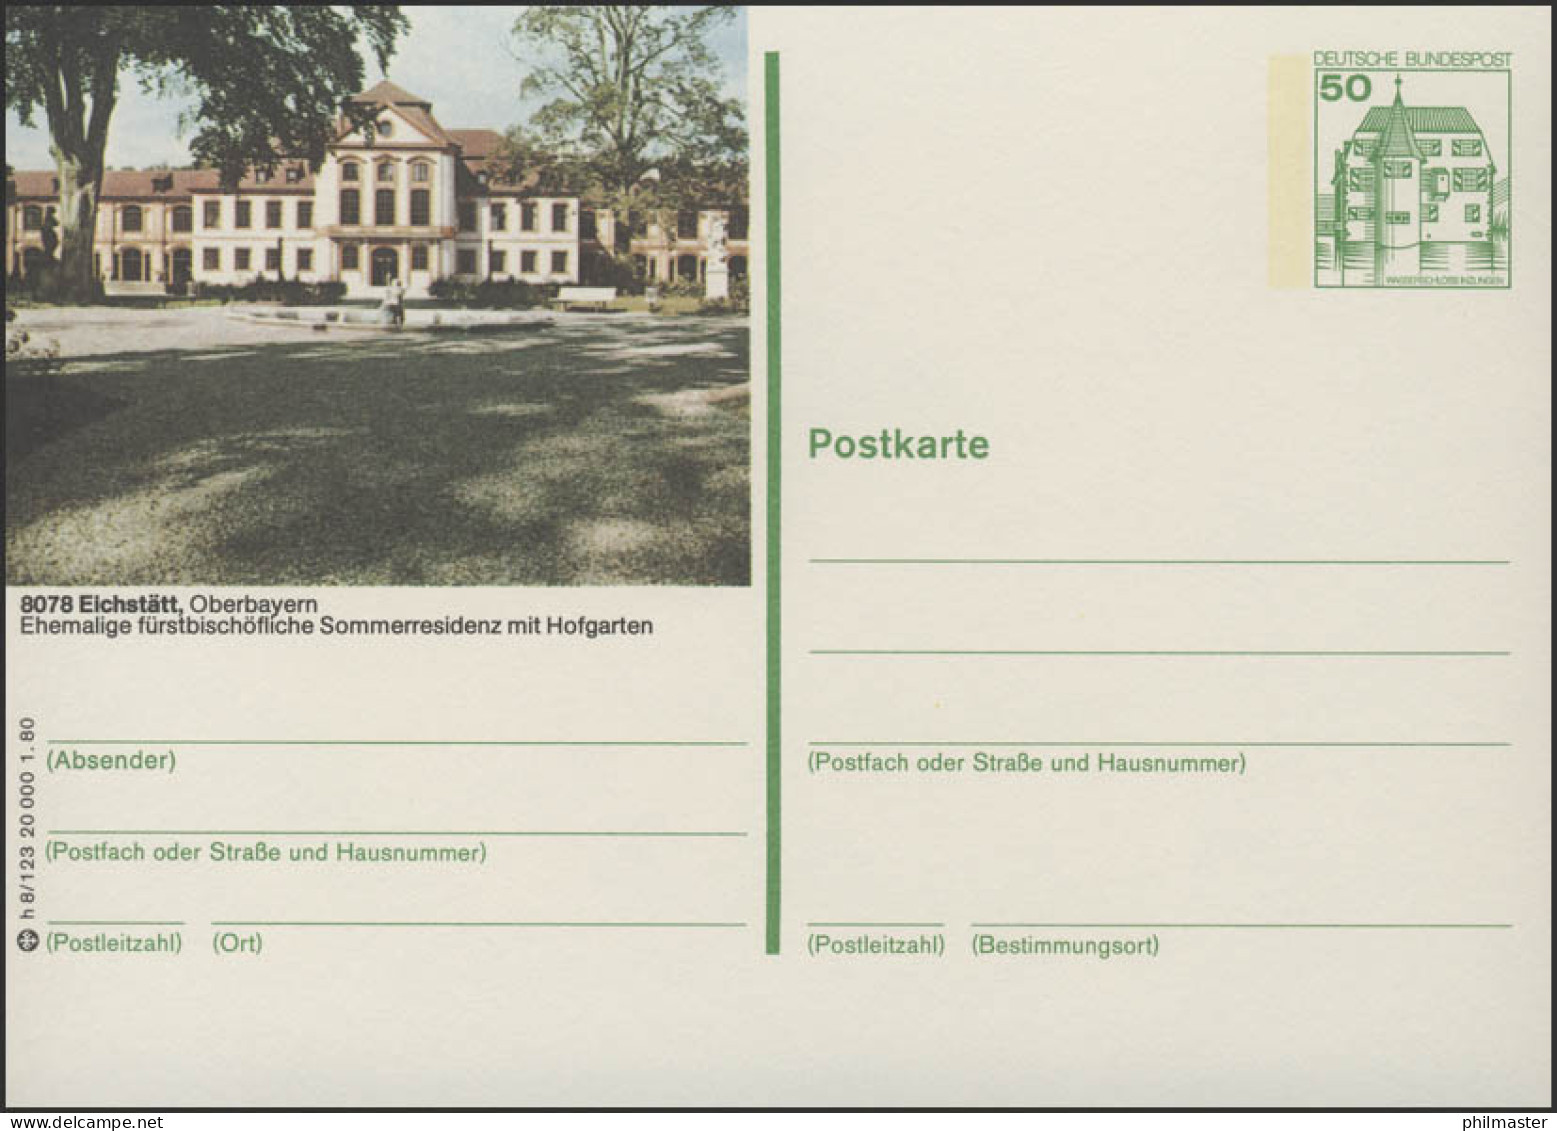 P130-h8/123 - 8078 Eichstädt, Schloß ** - Illustrated Postcards - Mint